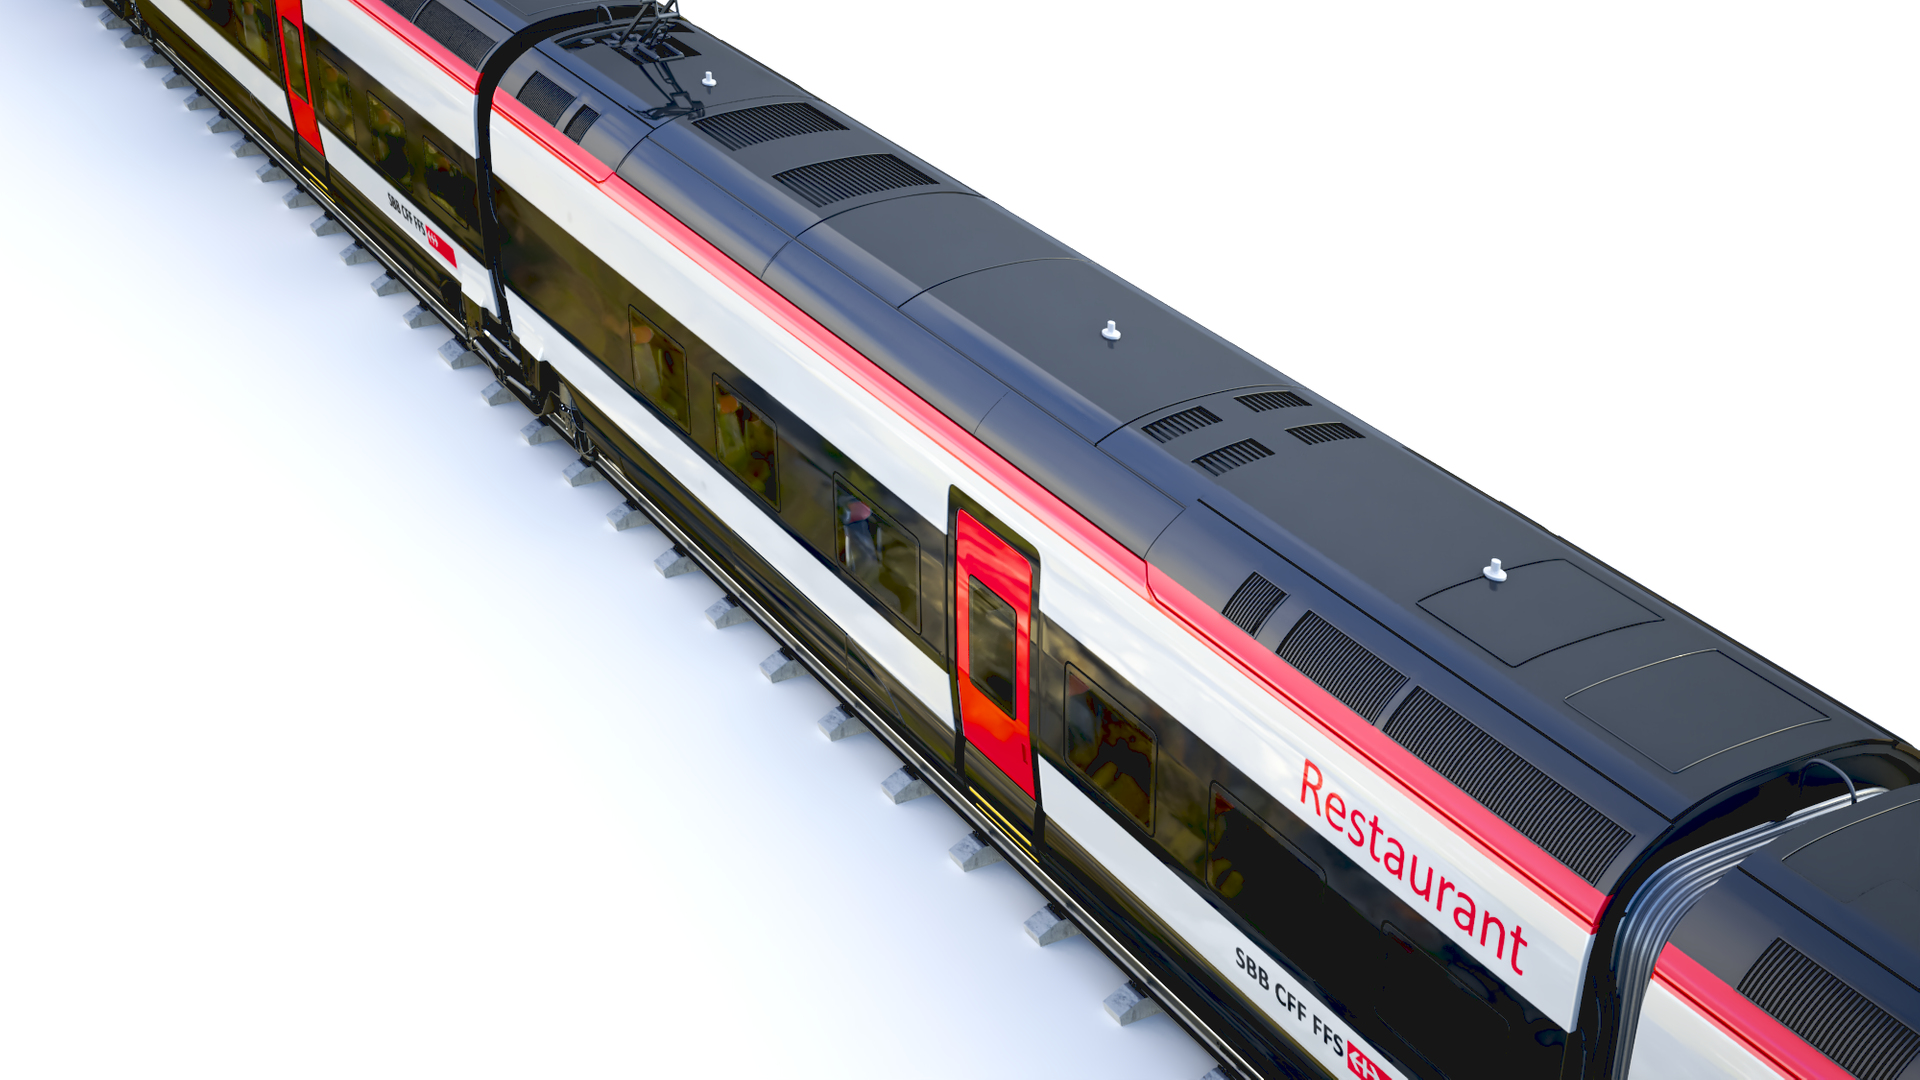 Stadler's First High-Speed Train Branded “SMILE”